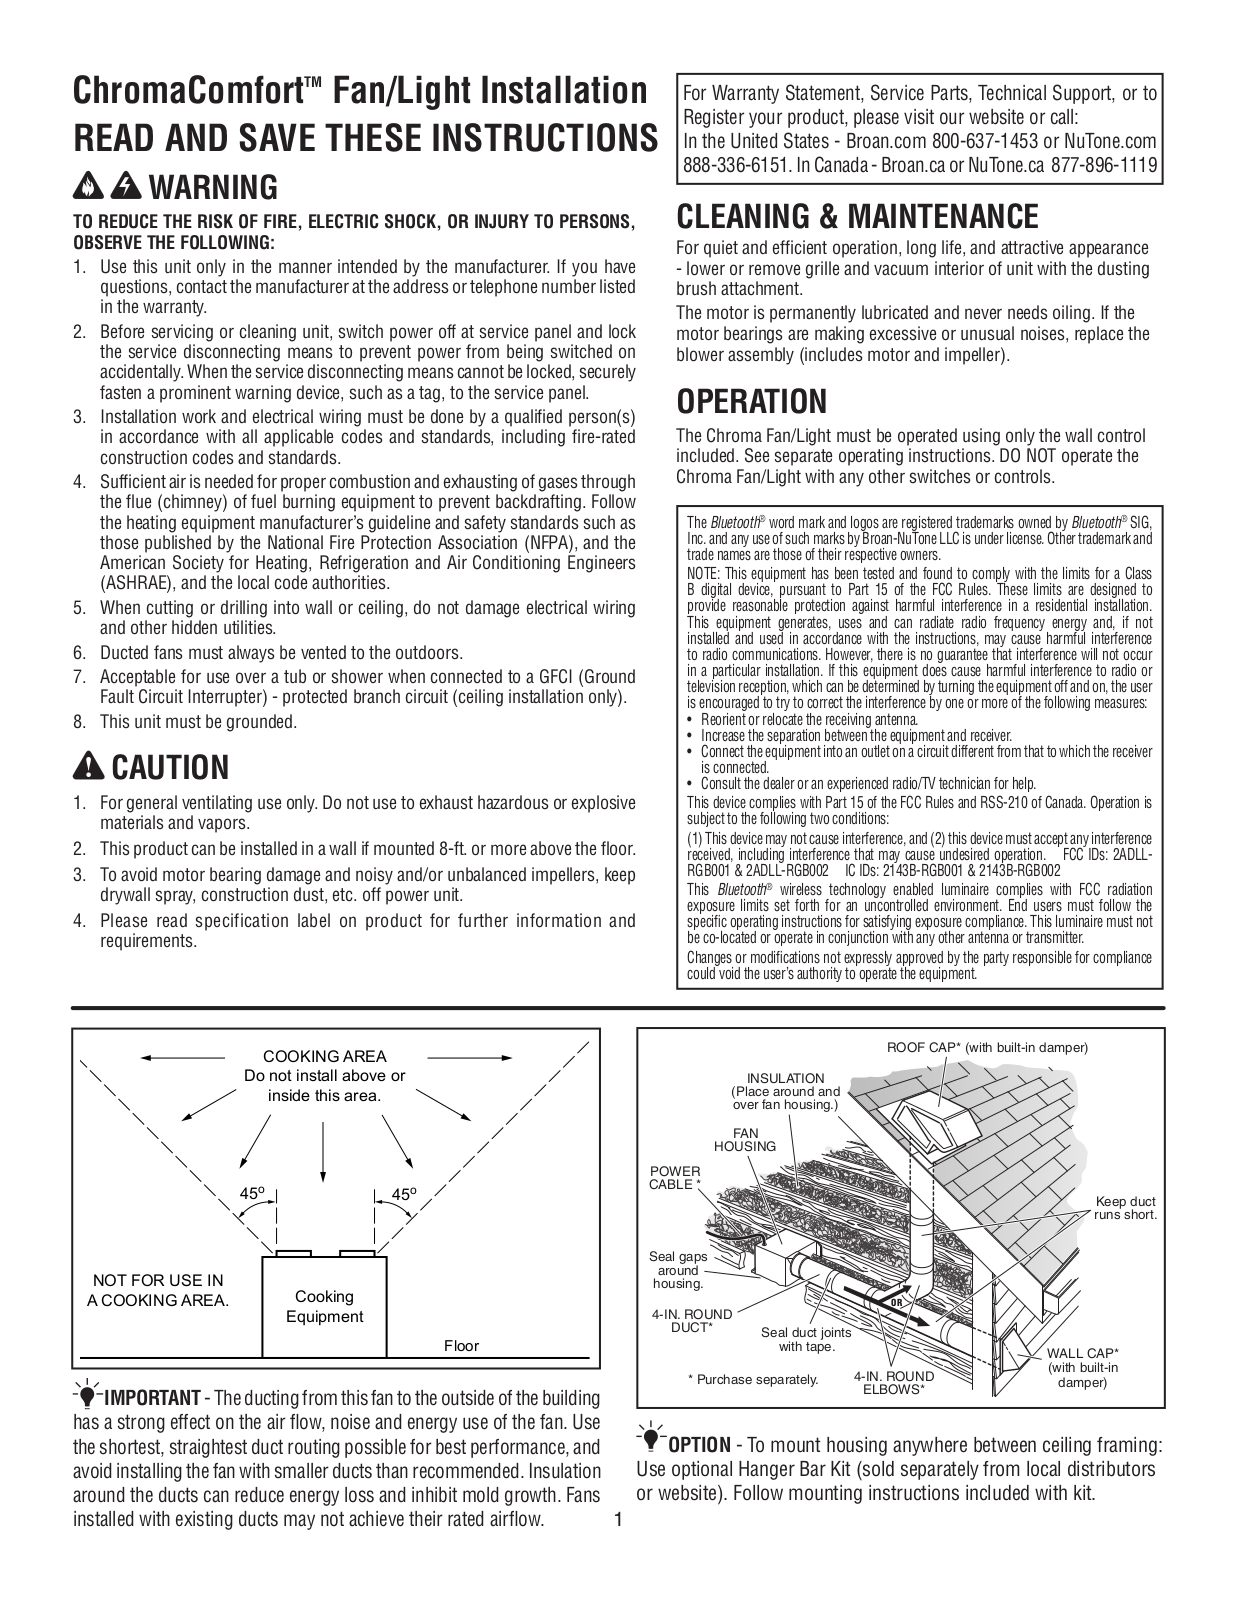 NuTone AERN110RGBL, AER110RGBL Installation Manual